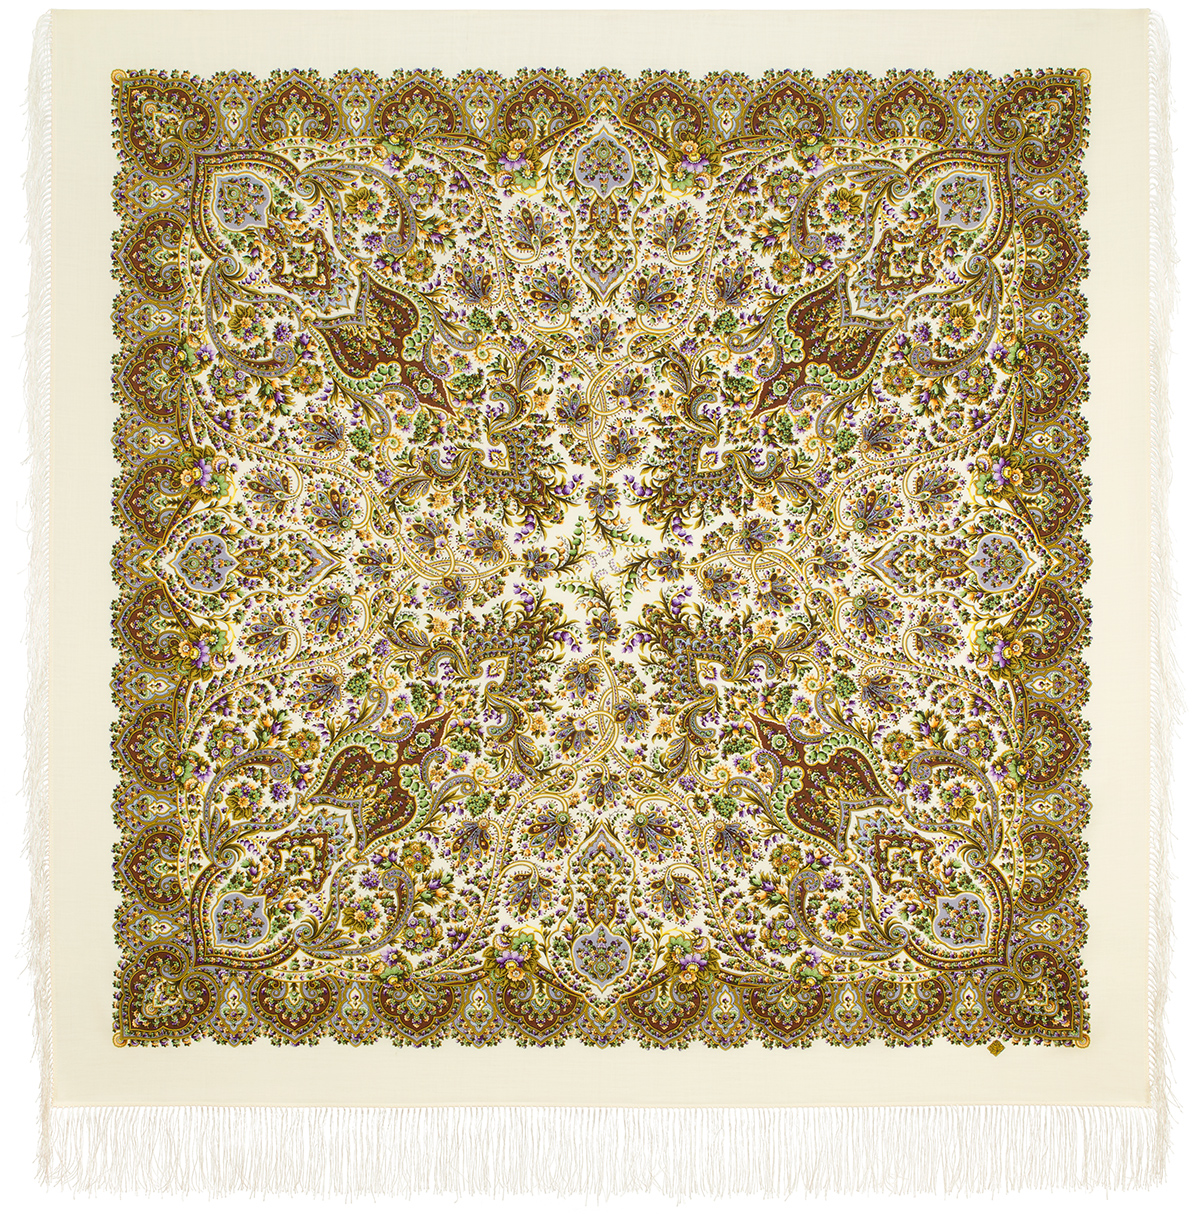 Платок женский Павловопосадский платок 2039 бежевый/коричневый, 146х146 см